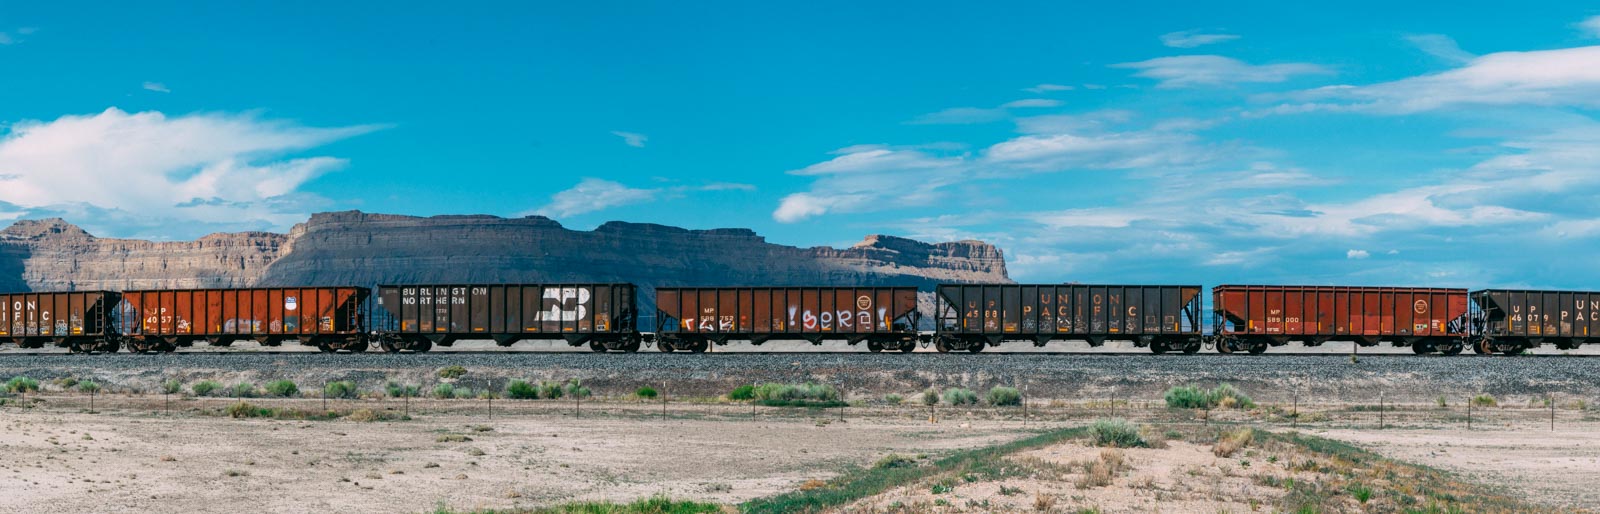 Utah train panorama